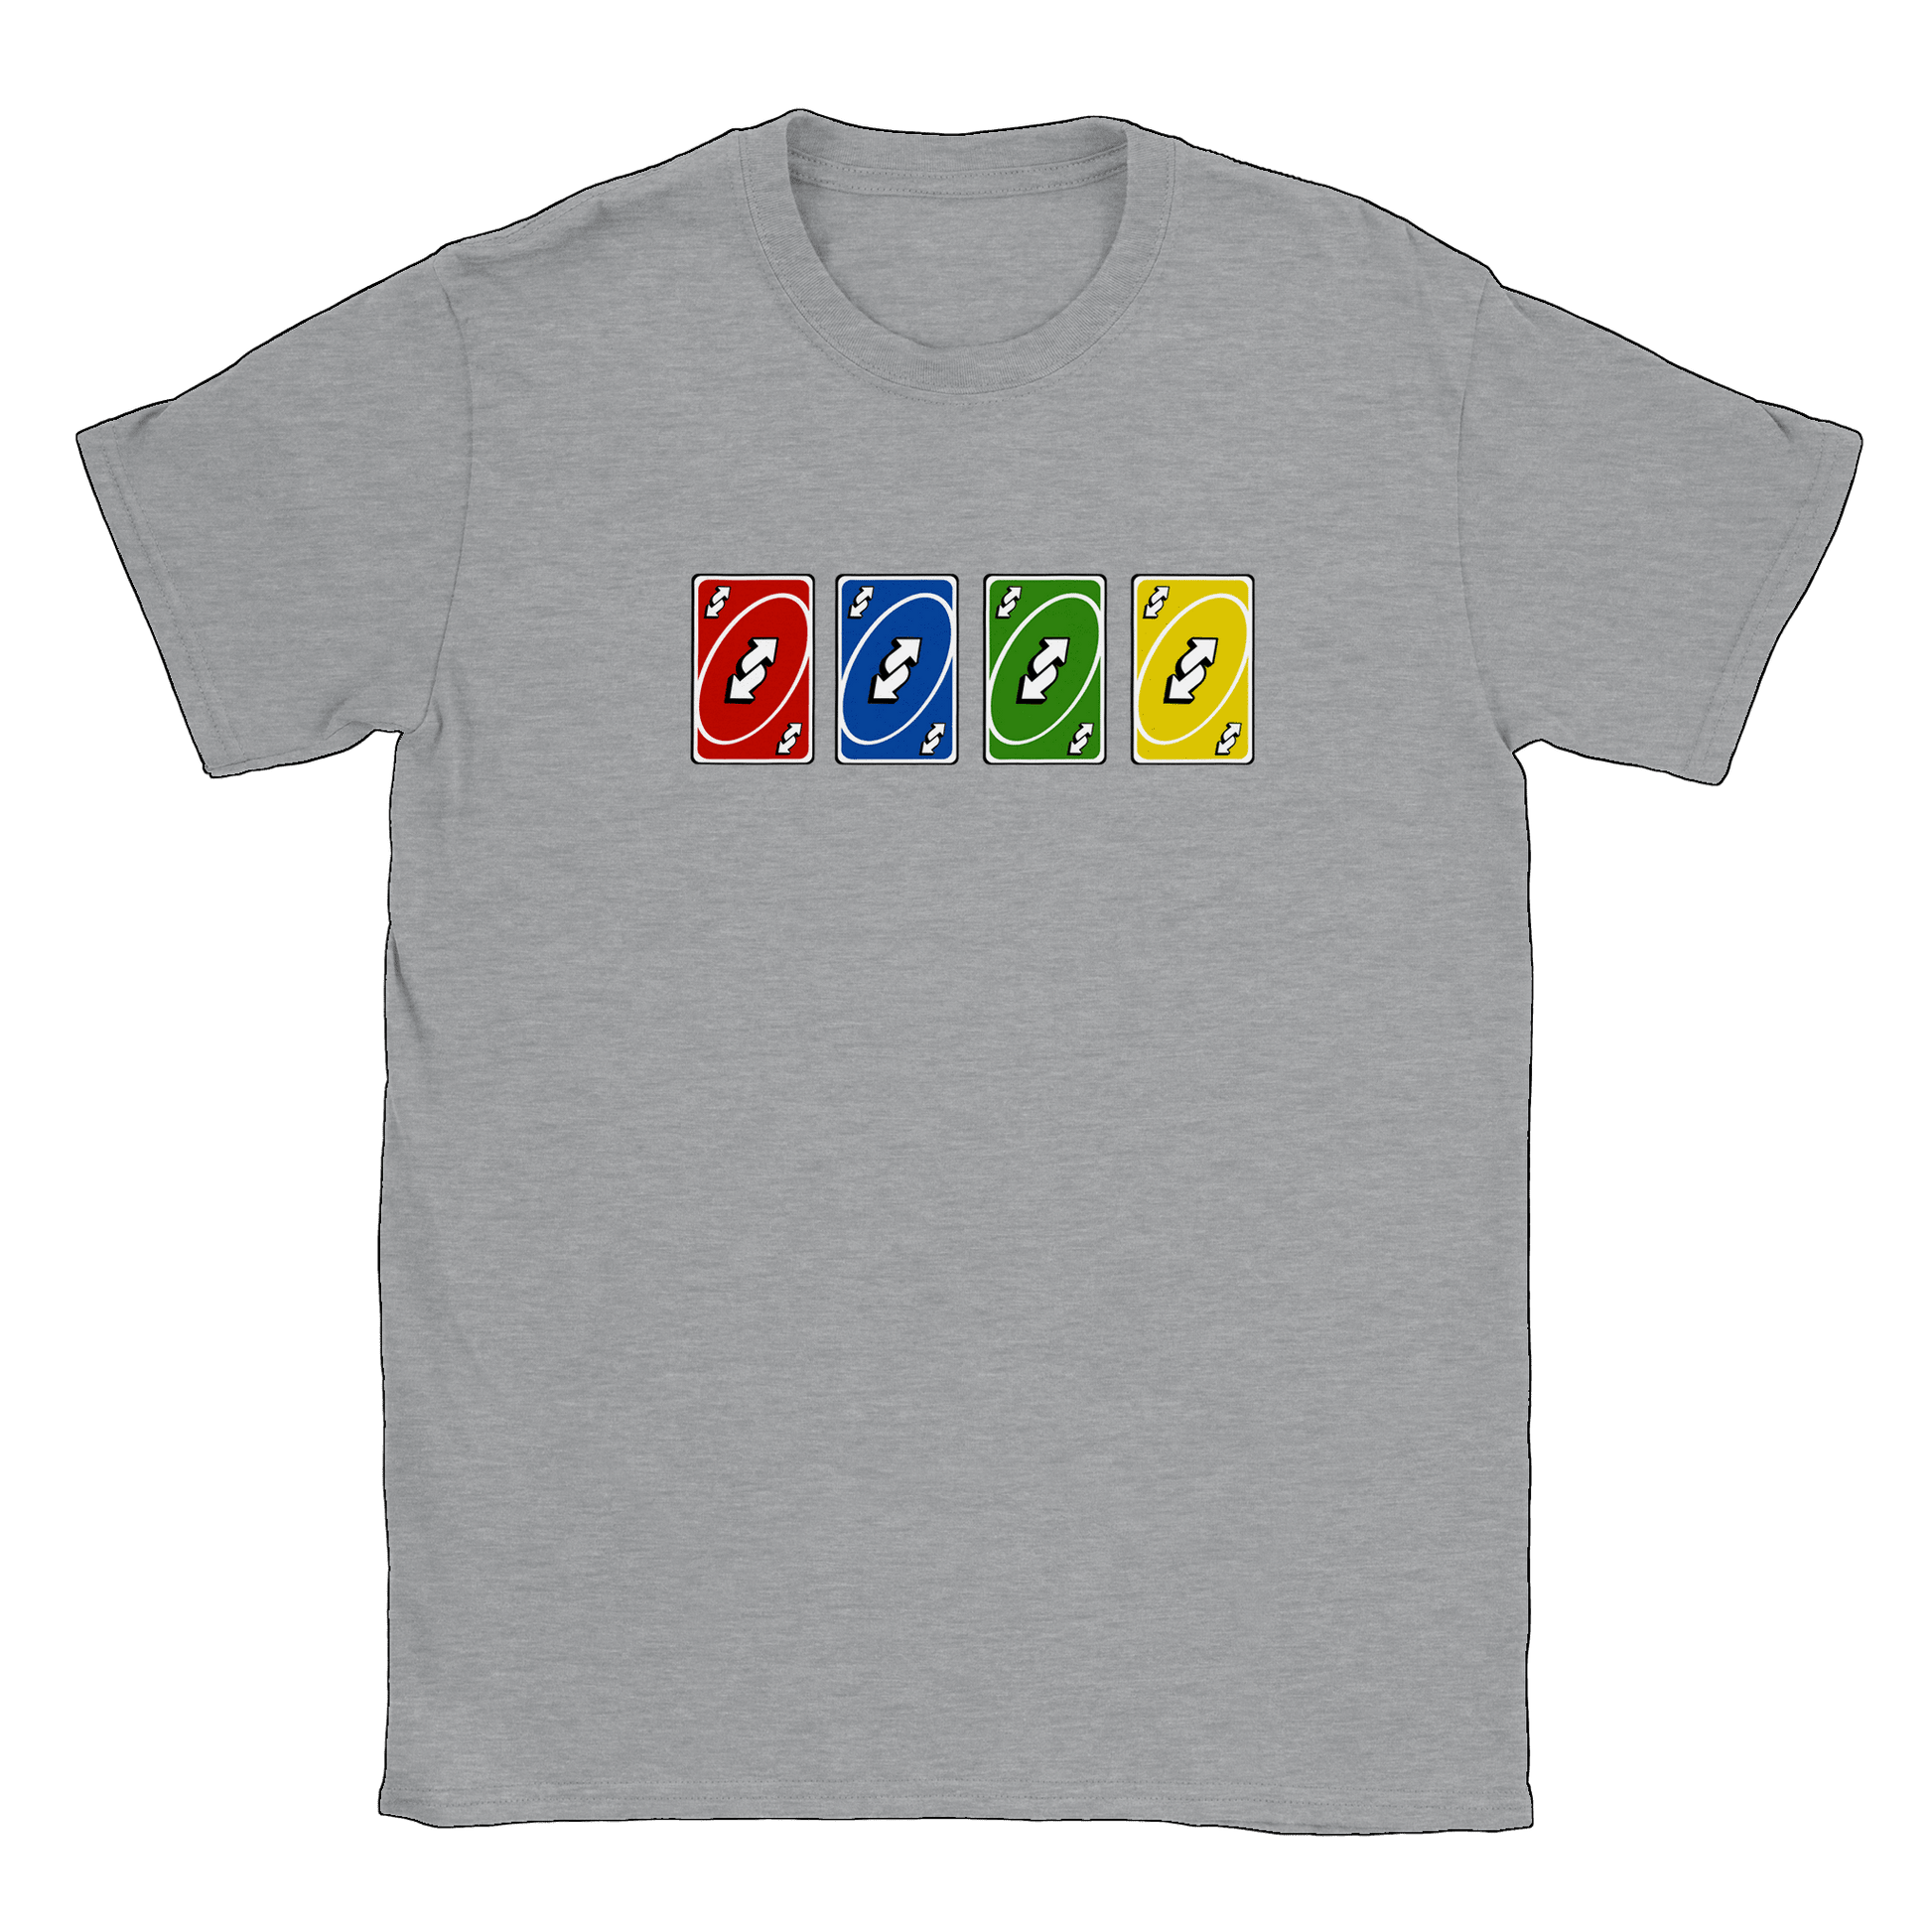 Vändkort alla färger - T-shirt Sports Grey